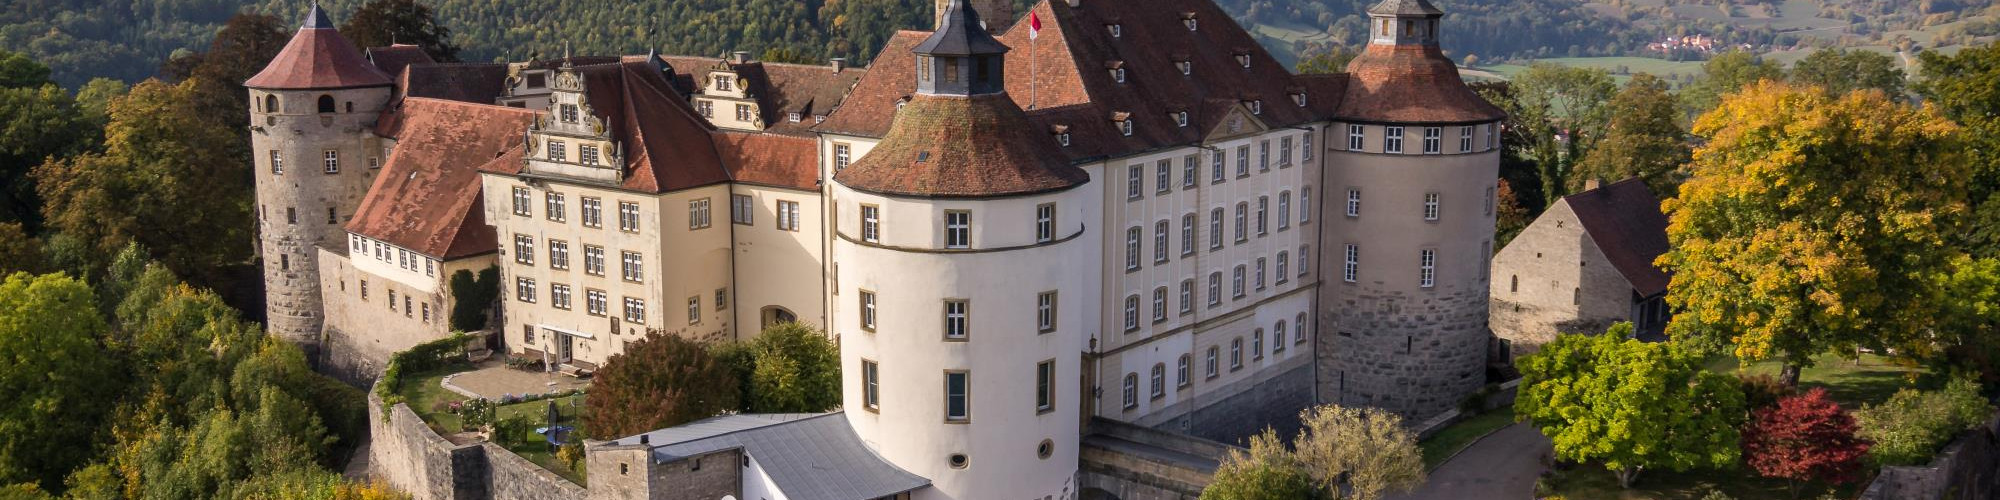 Schloßblick Schloss Langenburg